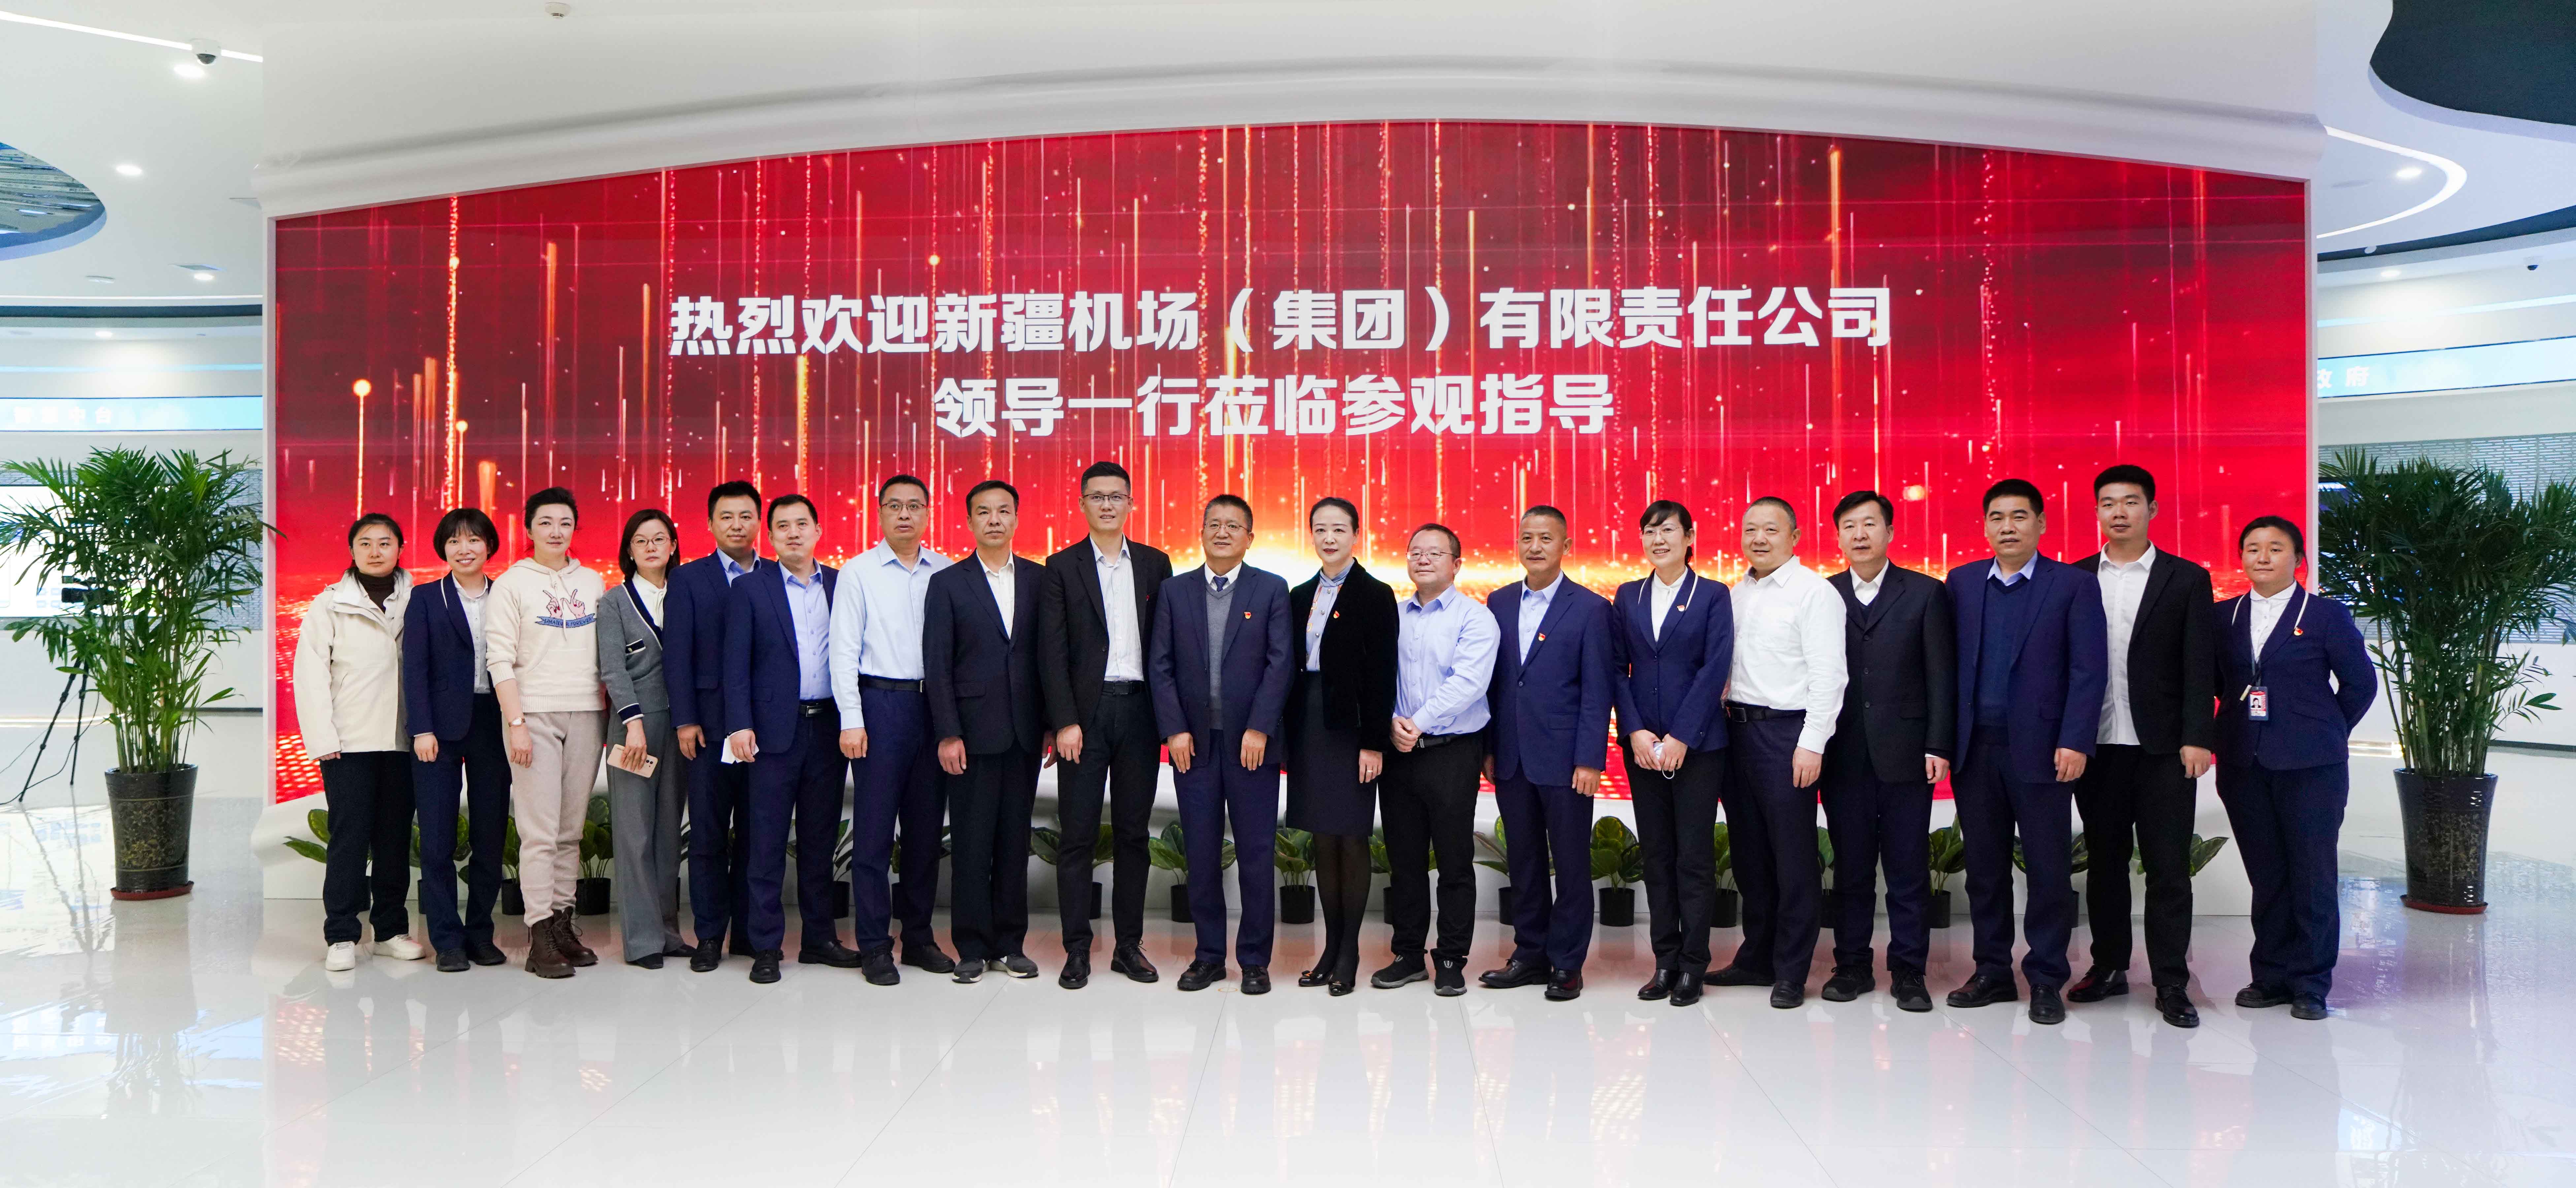 新疆机场集团组织参观中国移动新疆公司5G+联合创新基地